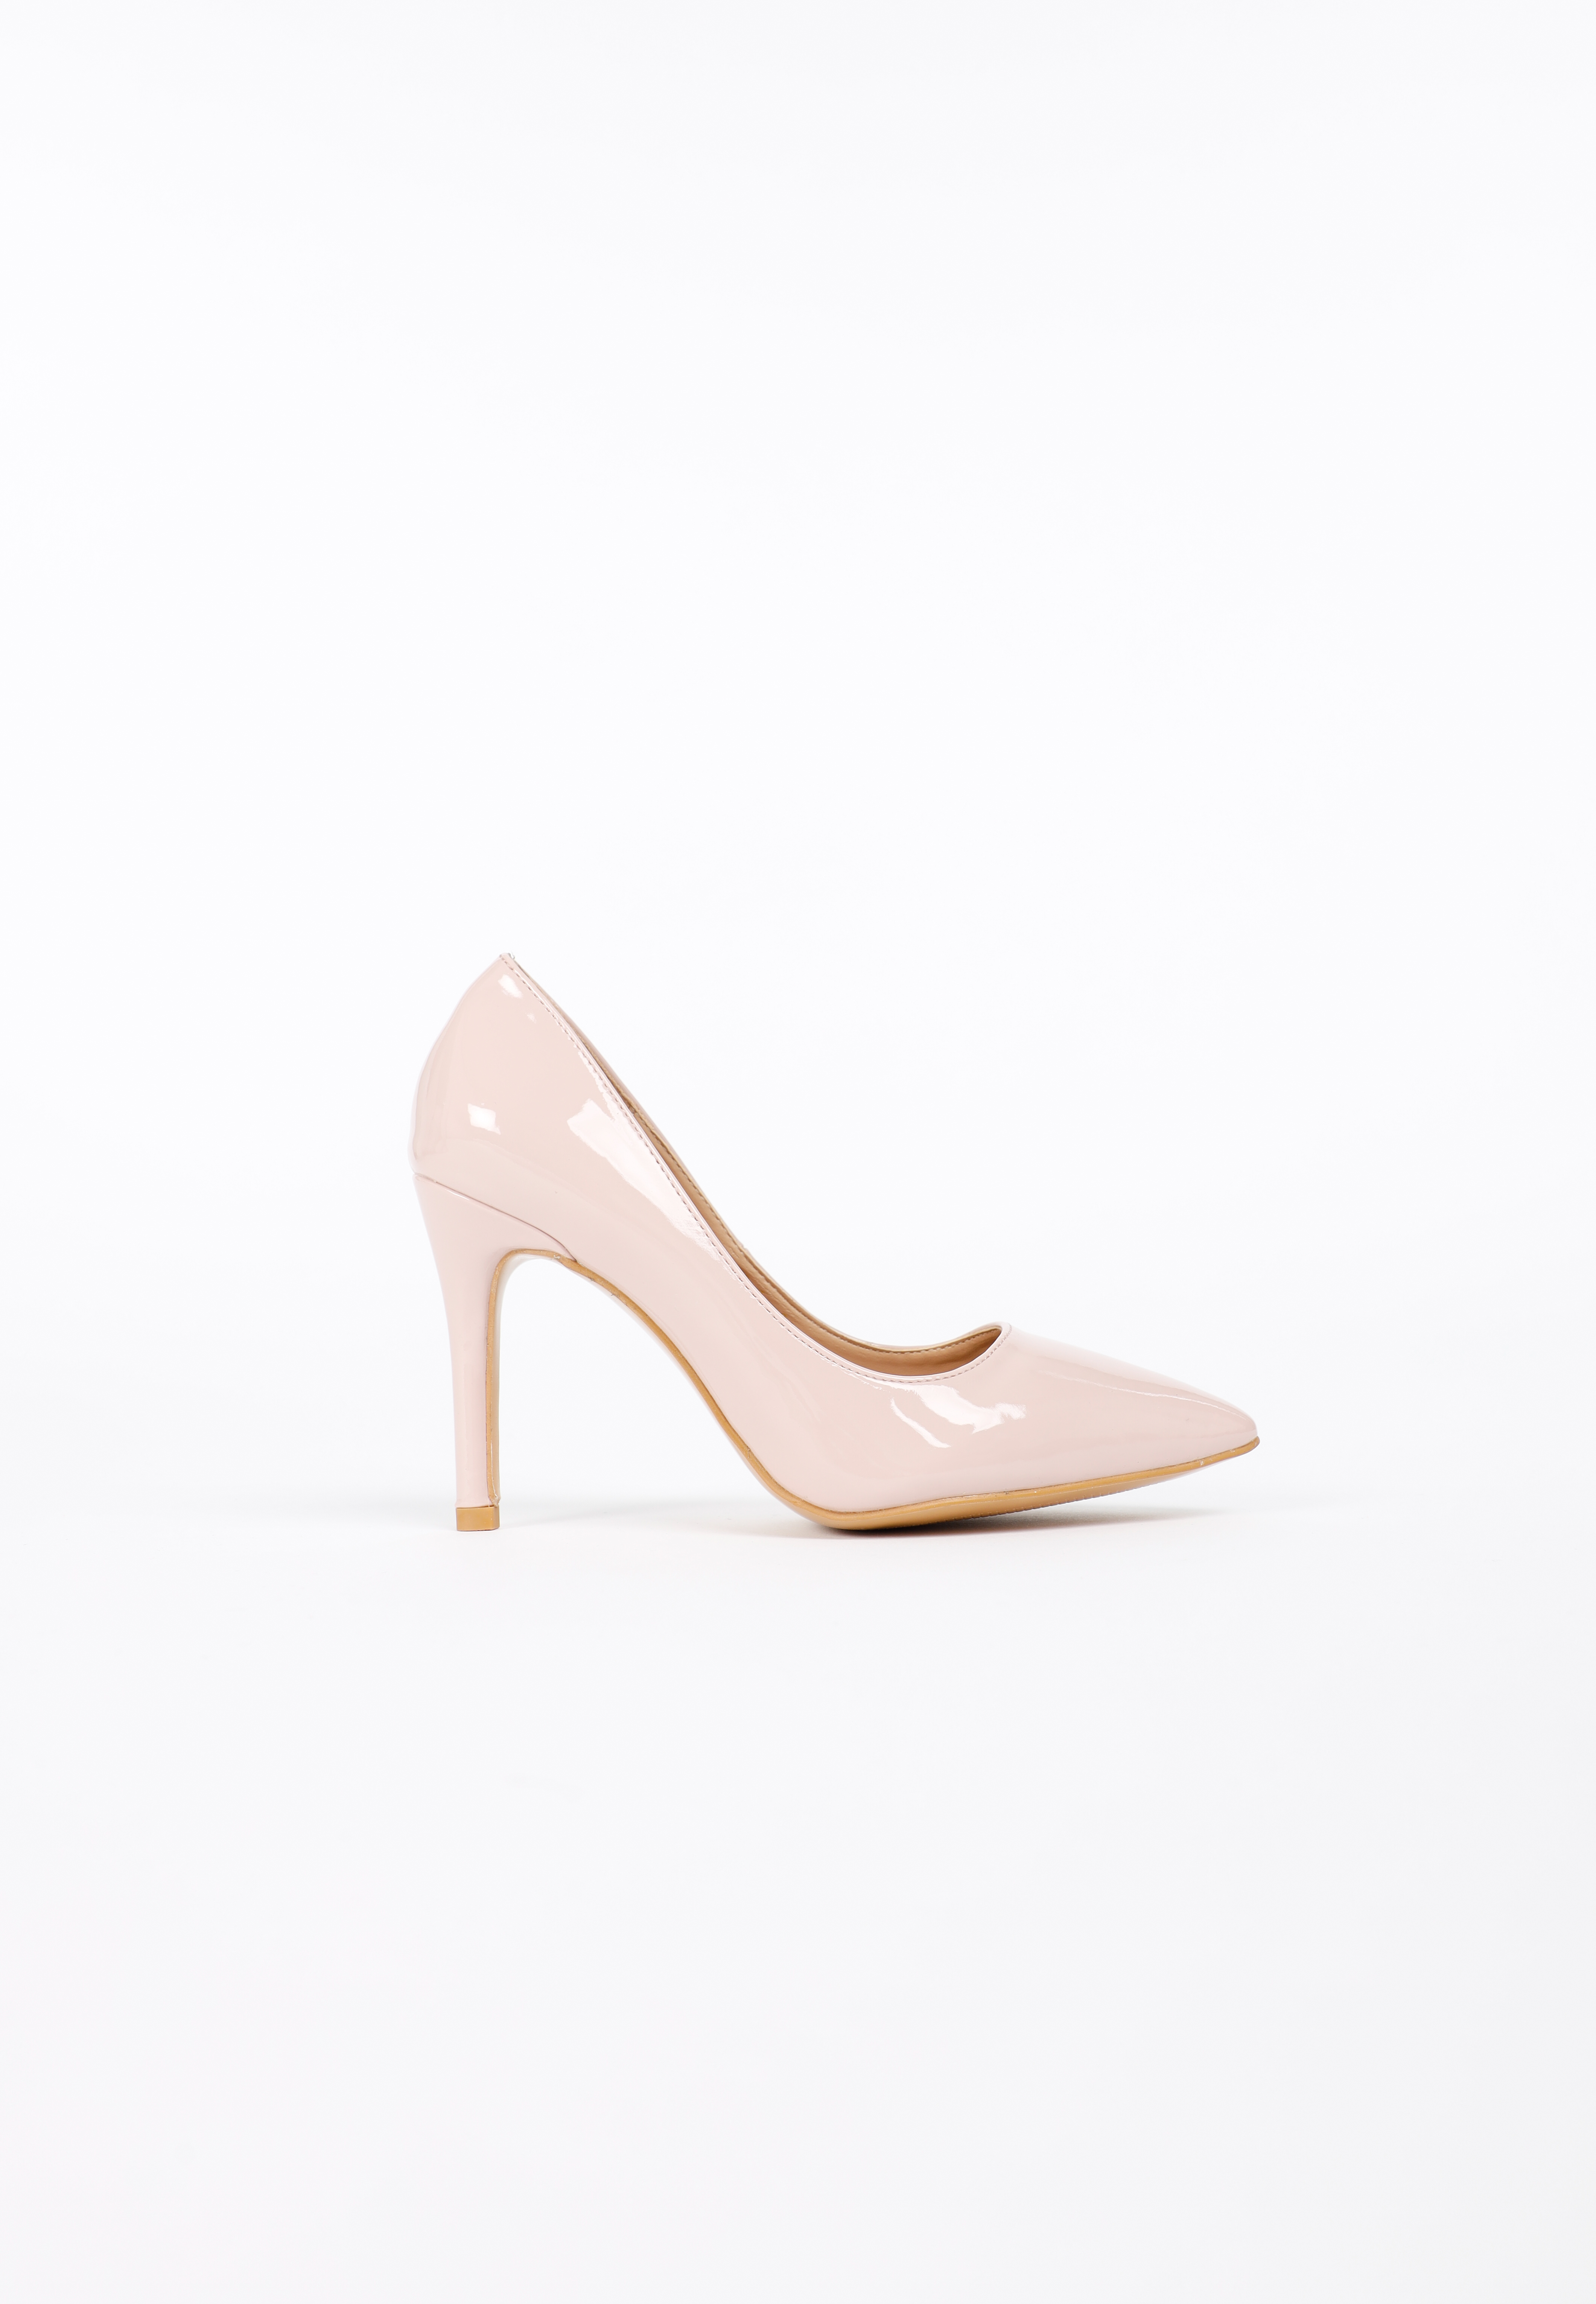 รองเท้าส้นสูง ดีไซน์หัวแหลม KATE Pink Patent High Heels MAC & GILL